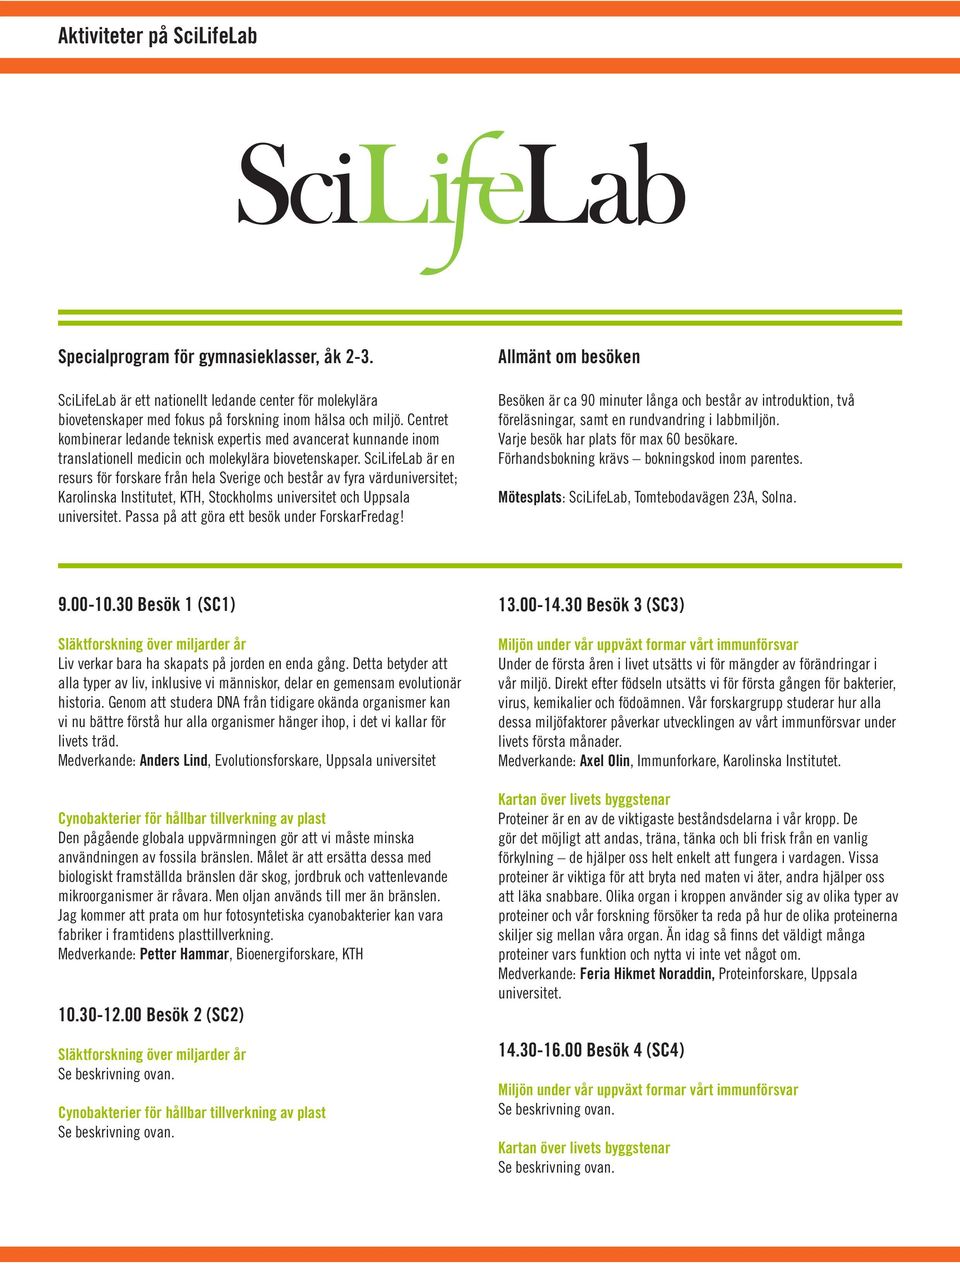 SciLifeLab är en resurs för forskare från hela Sverige och består av fyra värduniversitet; Karolinska Institutet, KTH, Stockholms universitet och Uppsala Passa på att göra ett besök under